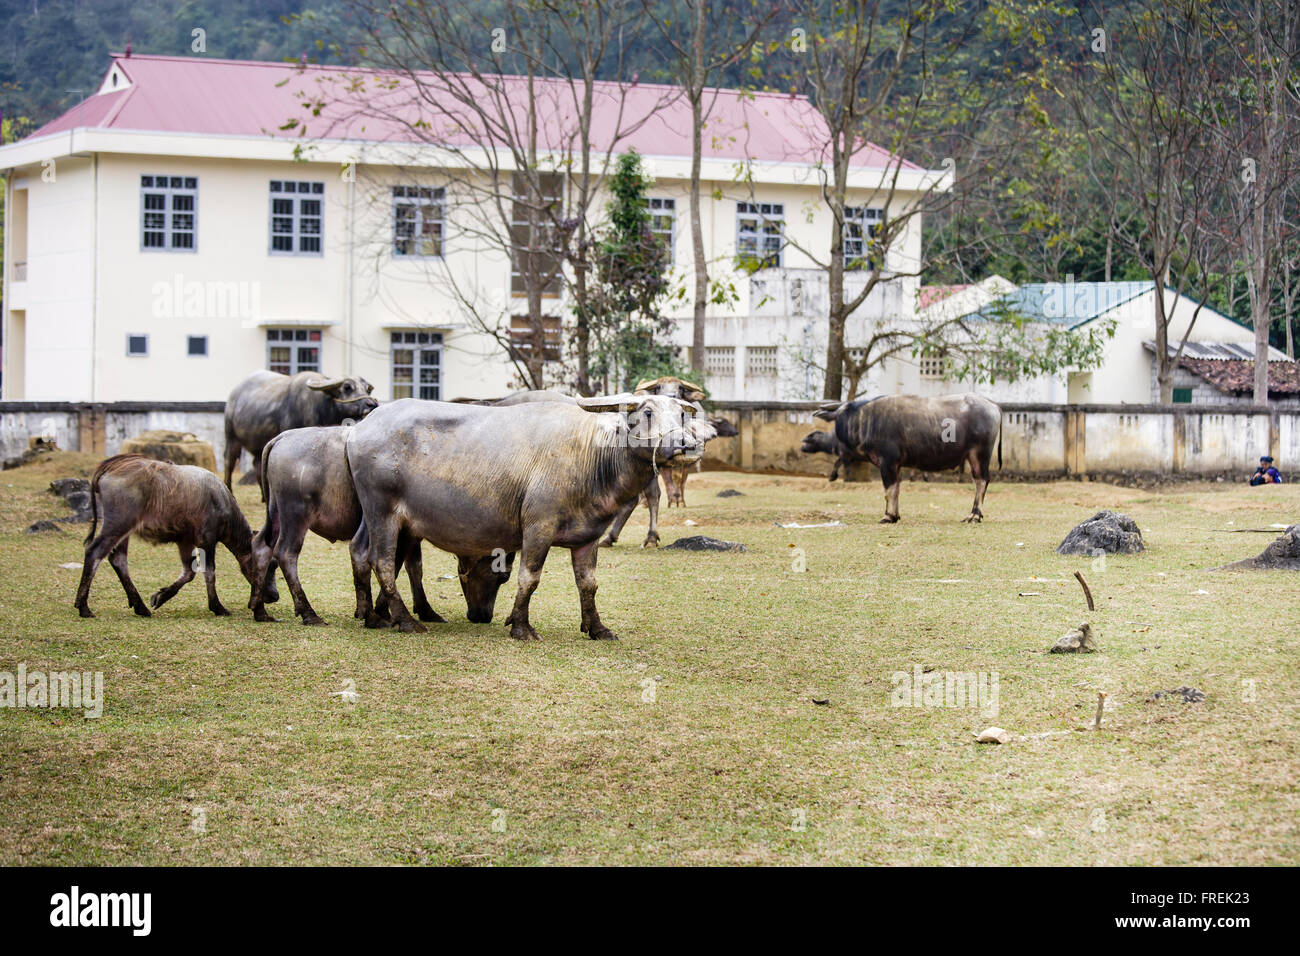 A Big buffalo at Cao Bang province, Vietnam Stock Photo